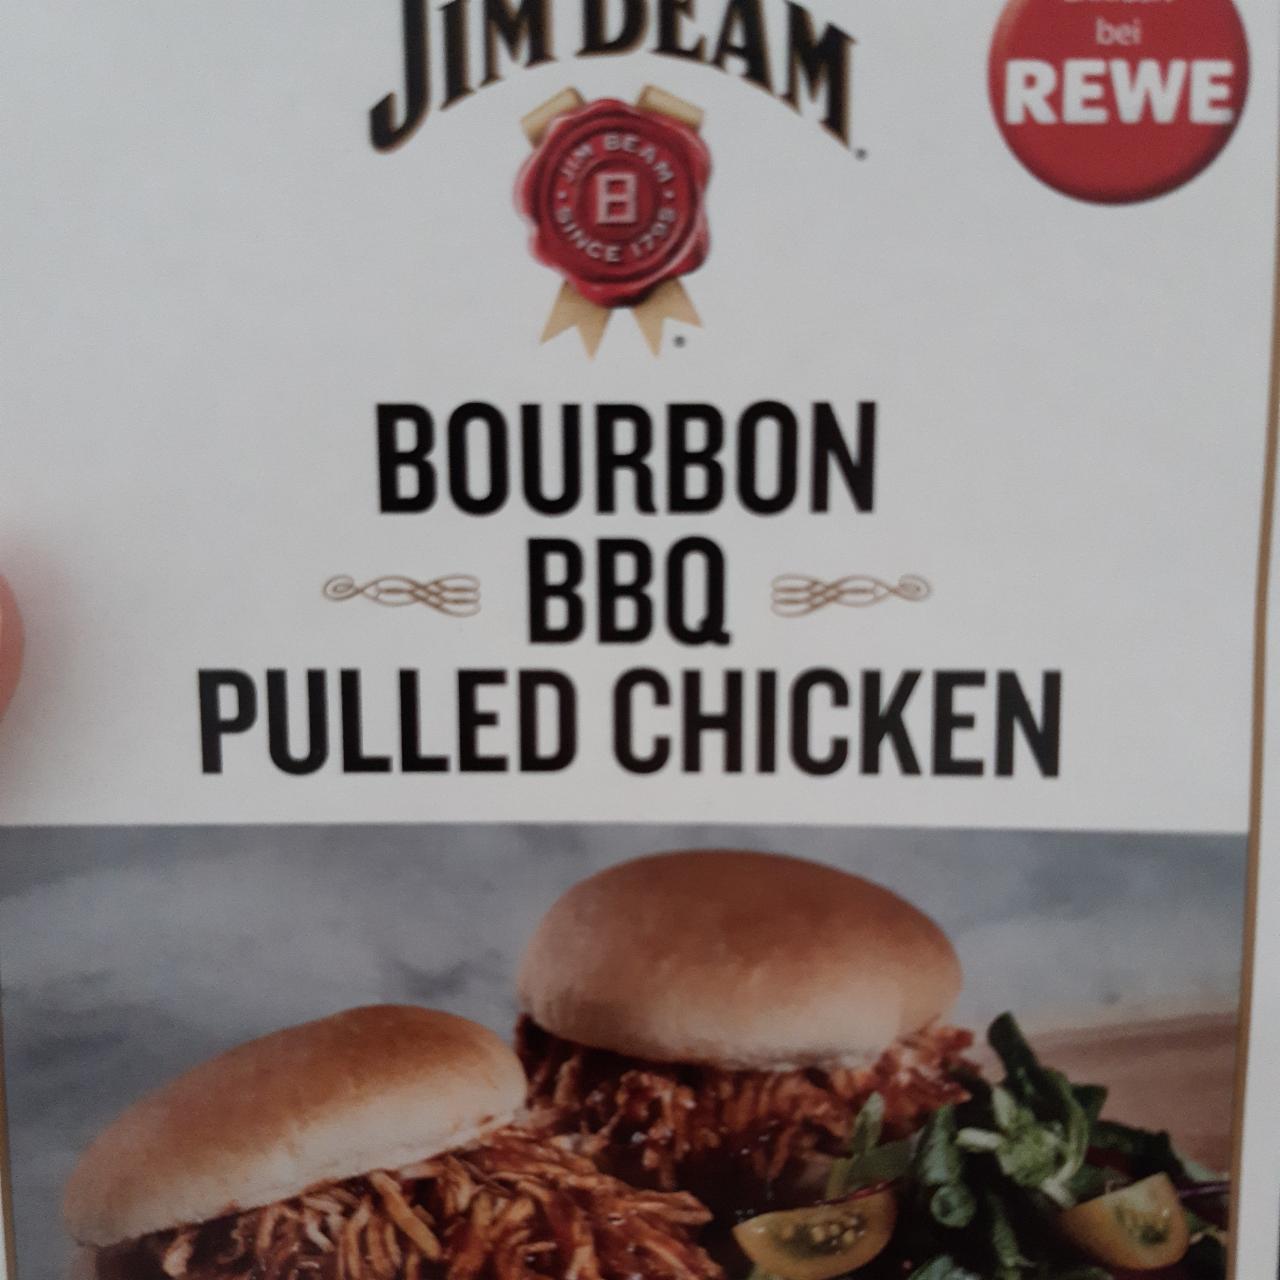 Fotografie - Bourbon bbq pulled chicken Jim Beam